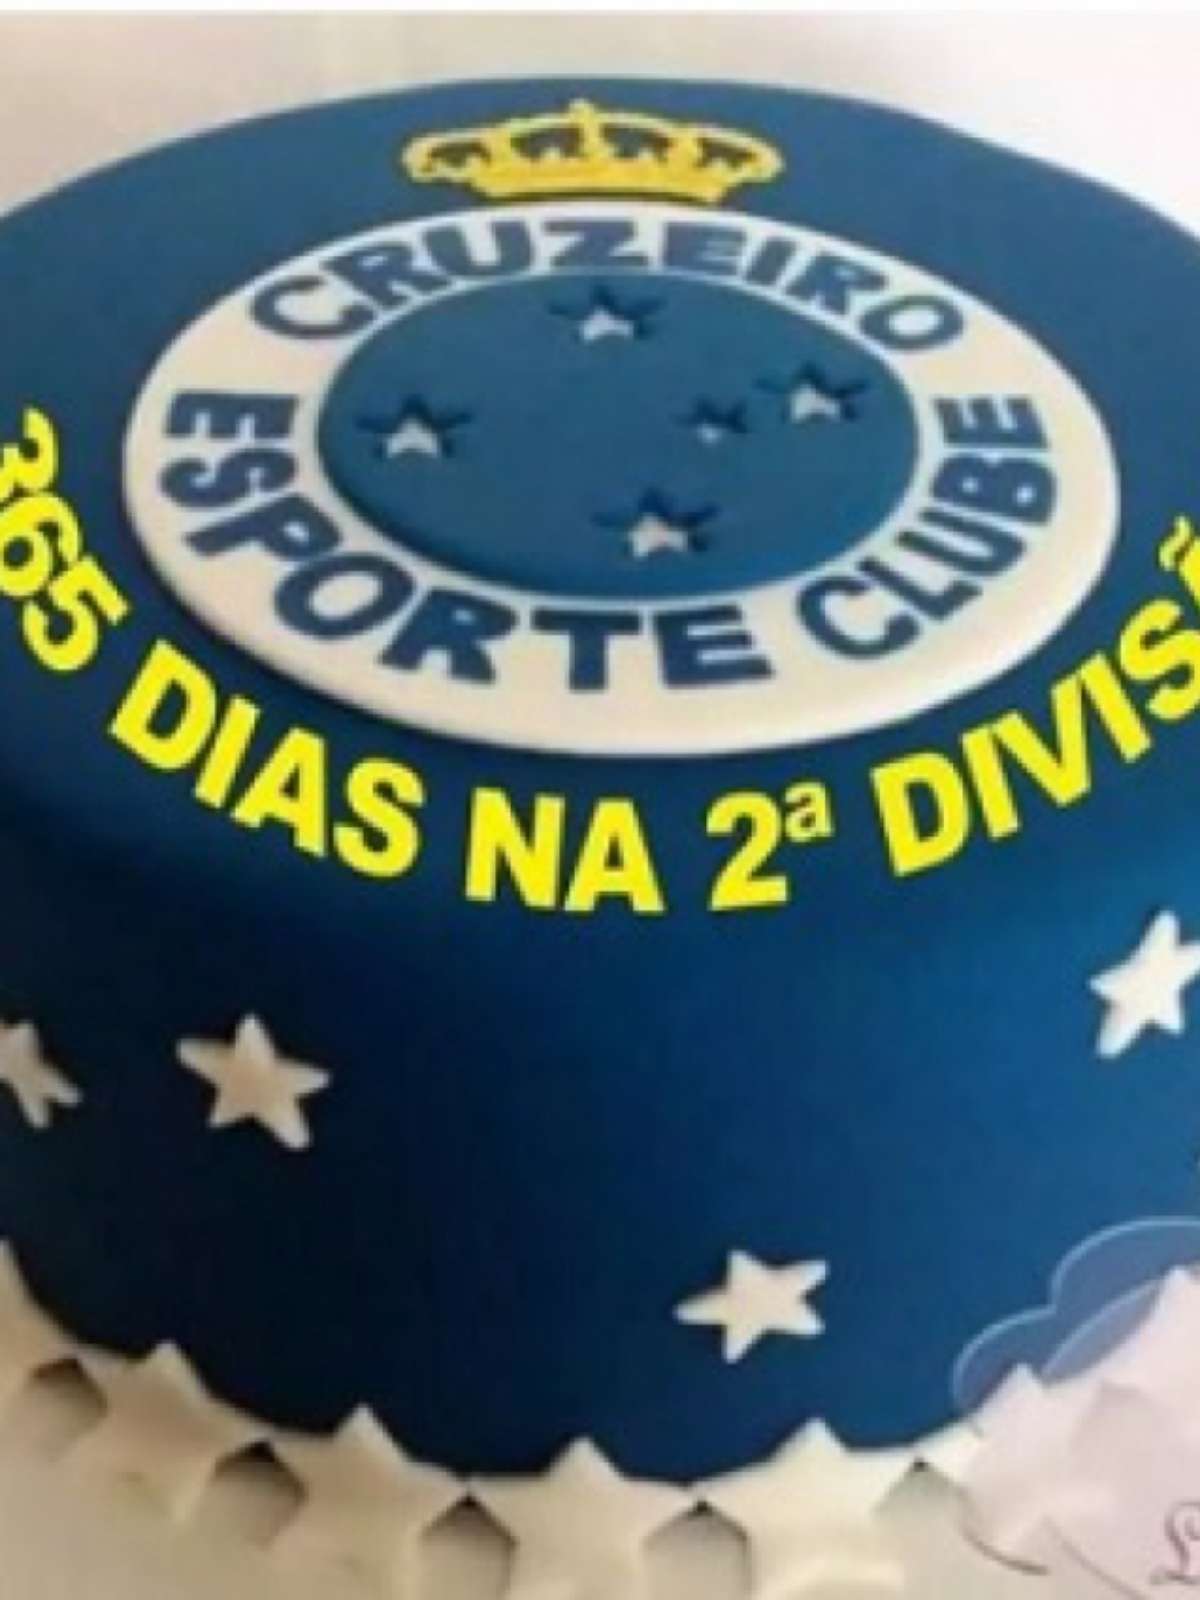 CRUZEIRO ENTRA PARA SEGUNDA DIVISÃO - Agência Look